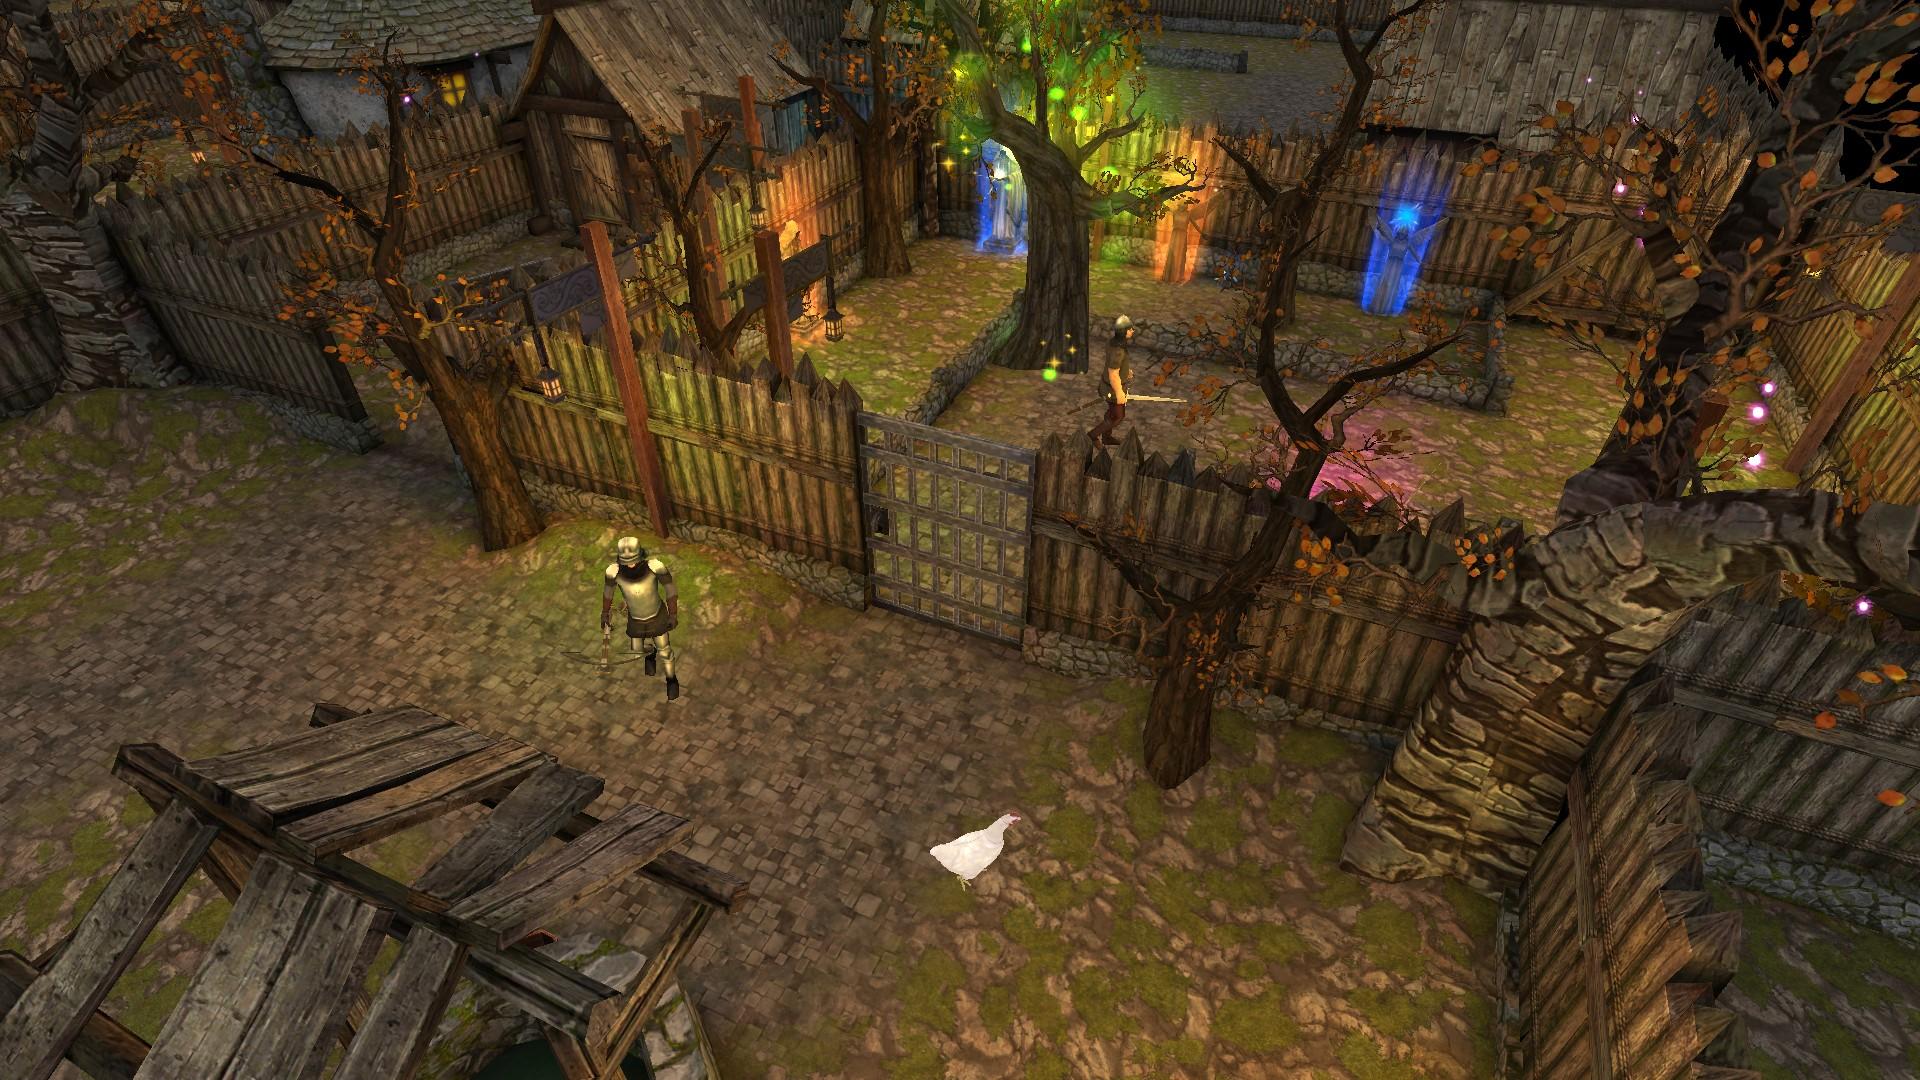 Screenshot 1 of Moonshades RPG 地下城探索者 1.9.15